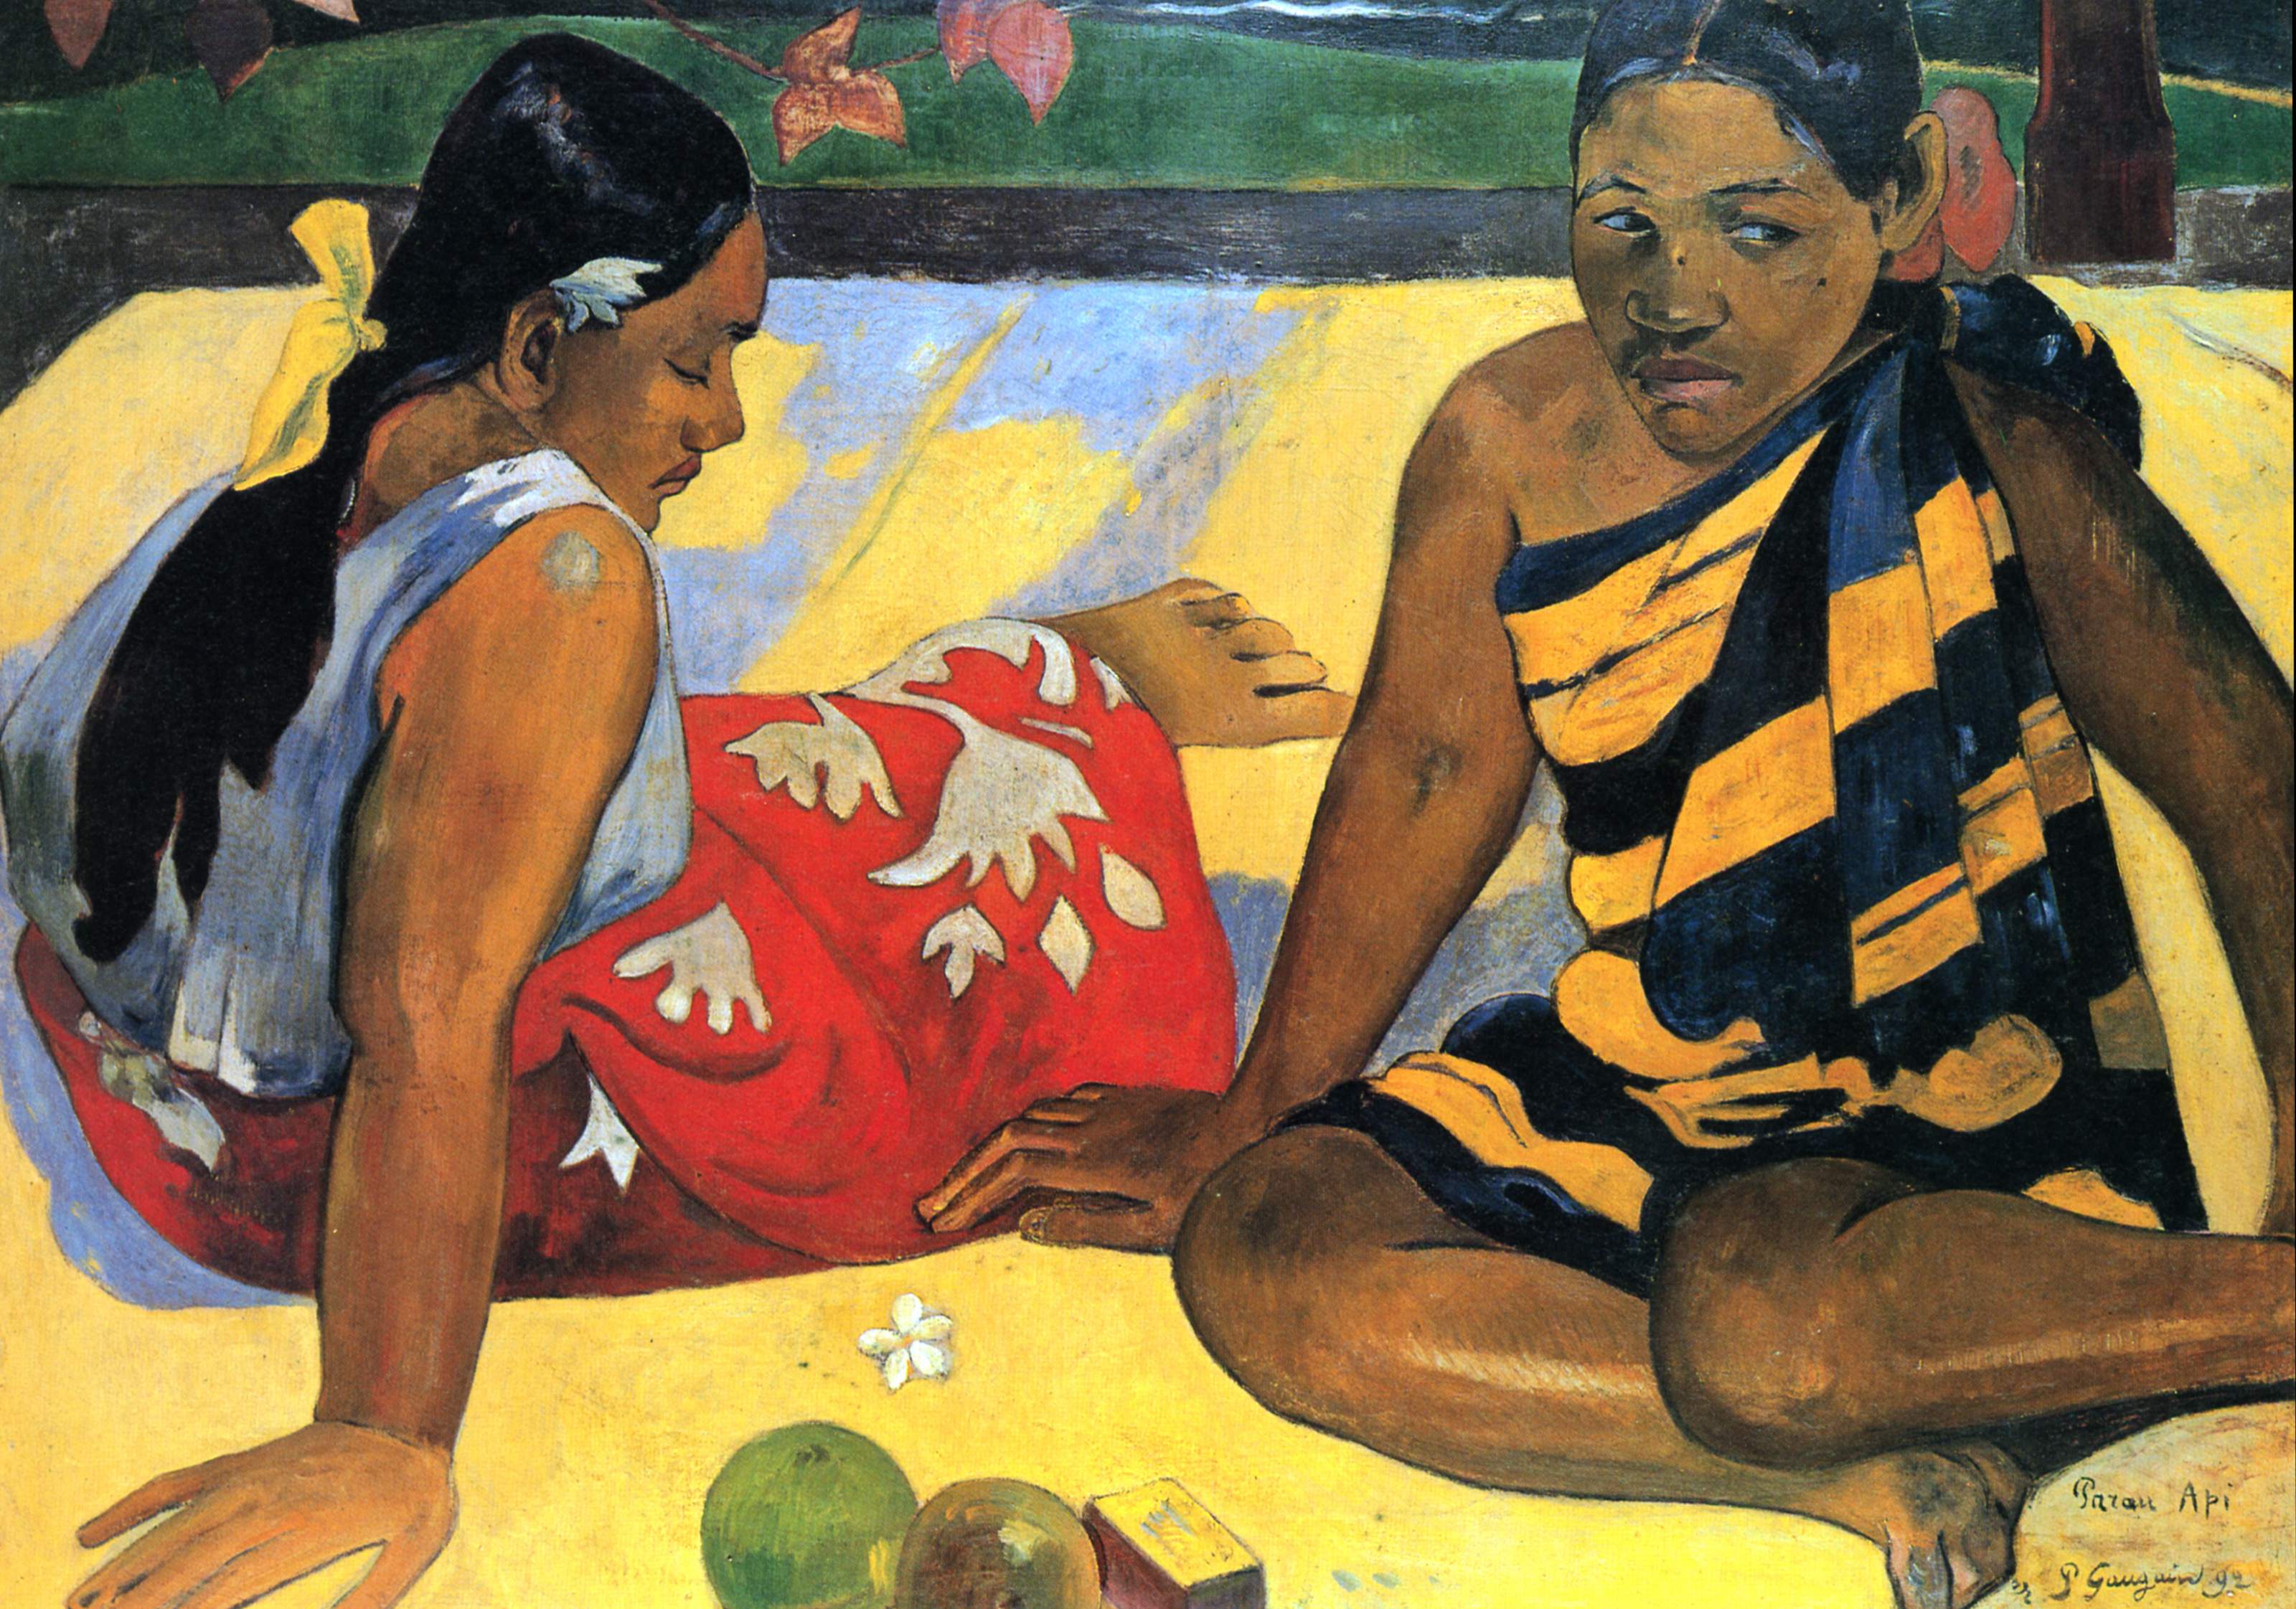 Parau api (les nouvelles du jour) by Paul Gauguin - 1892 - 67 x 91 cm Staatliche Kunstsammlungen Dresden